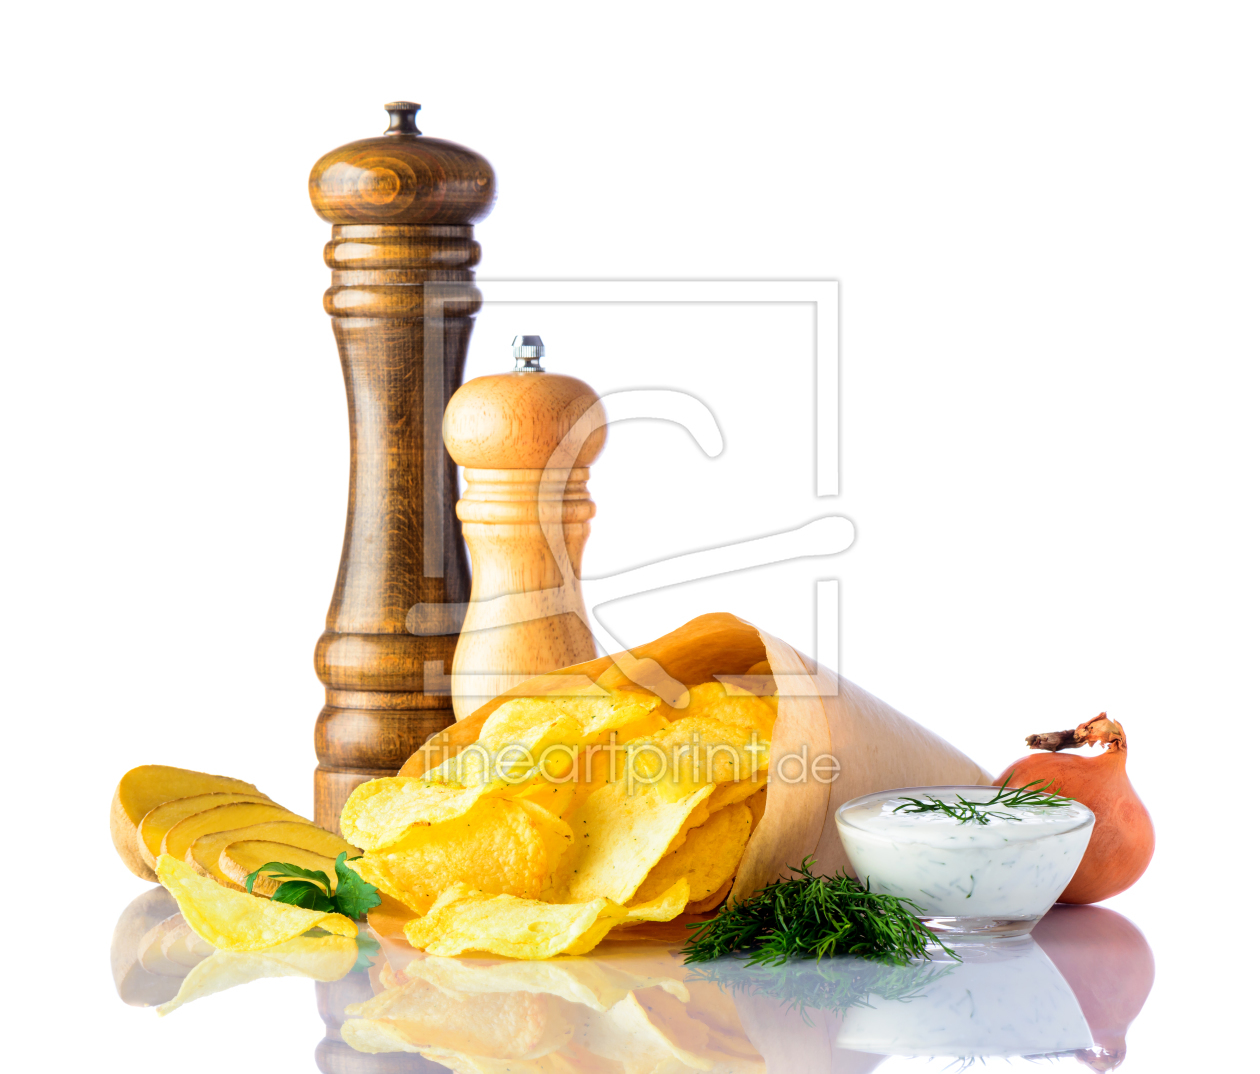 Bild-Nr.: 11911624 Kartoffel Chips Snack erstellt von xfotostudio